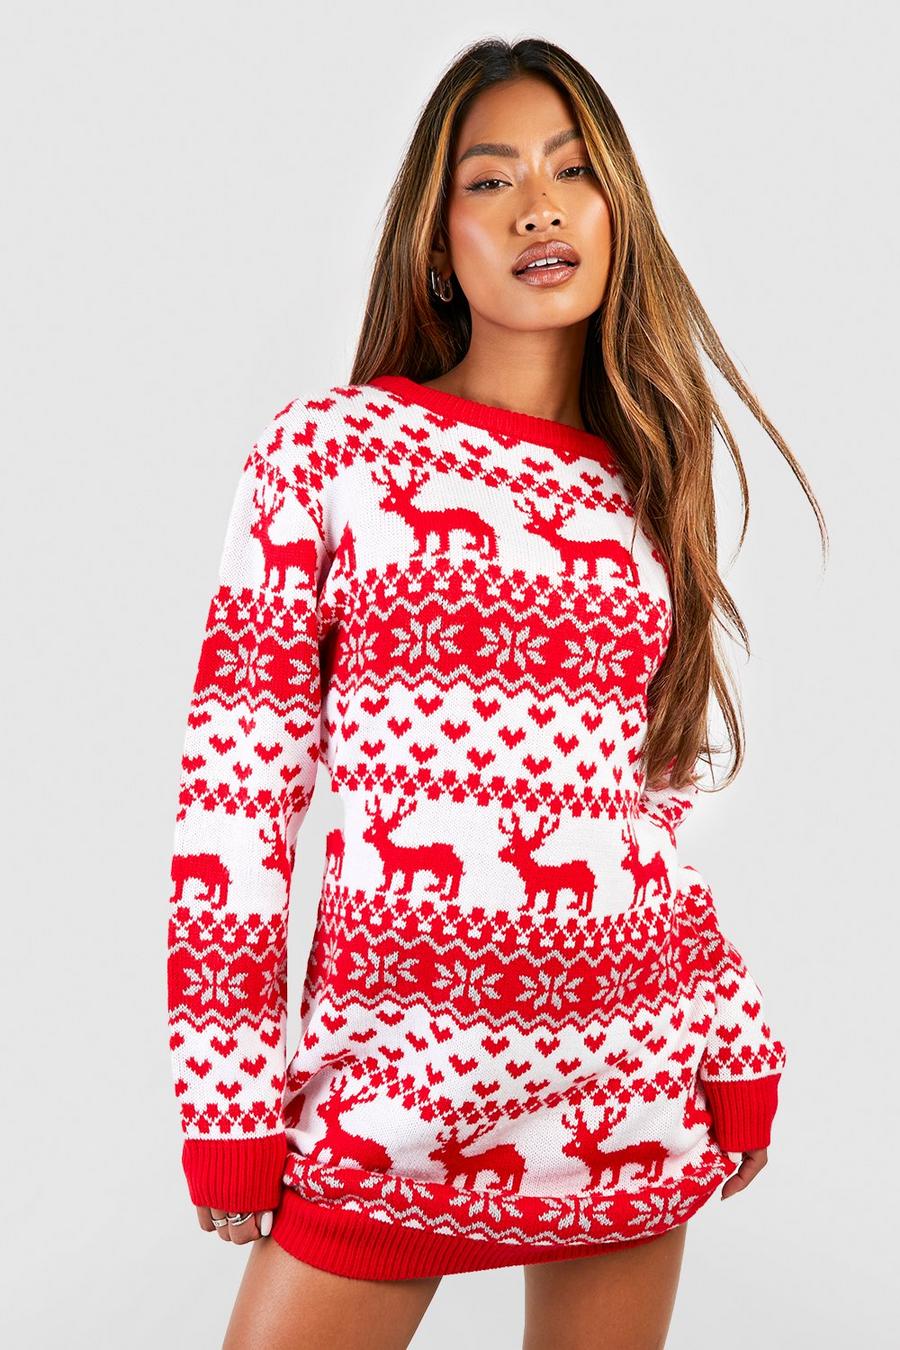 Vestito natalizio in maglia con motivi Fairisle, cuori e renne, Red rosso